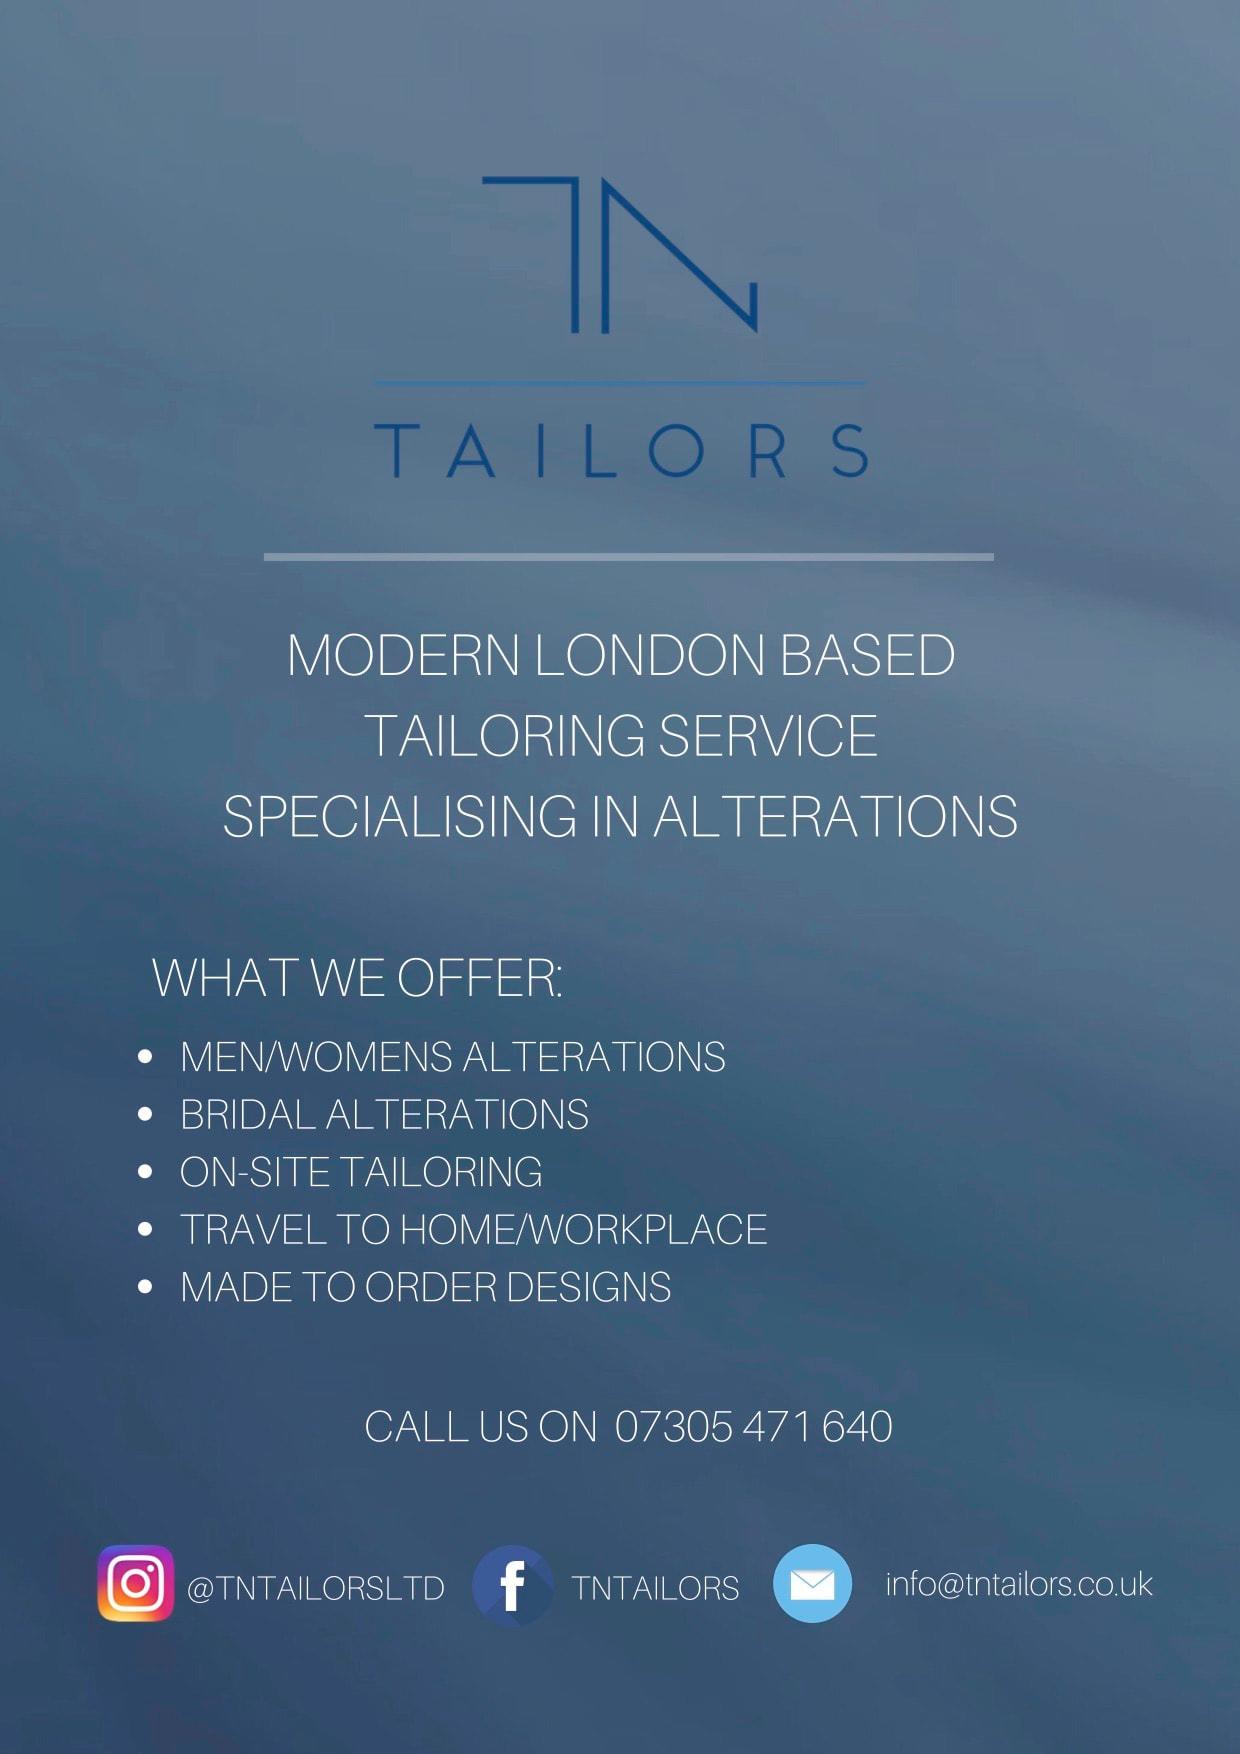 Images TN Tailors Ltd